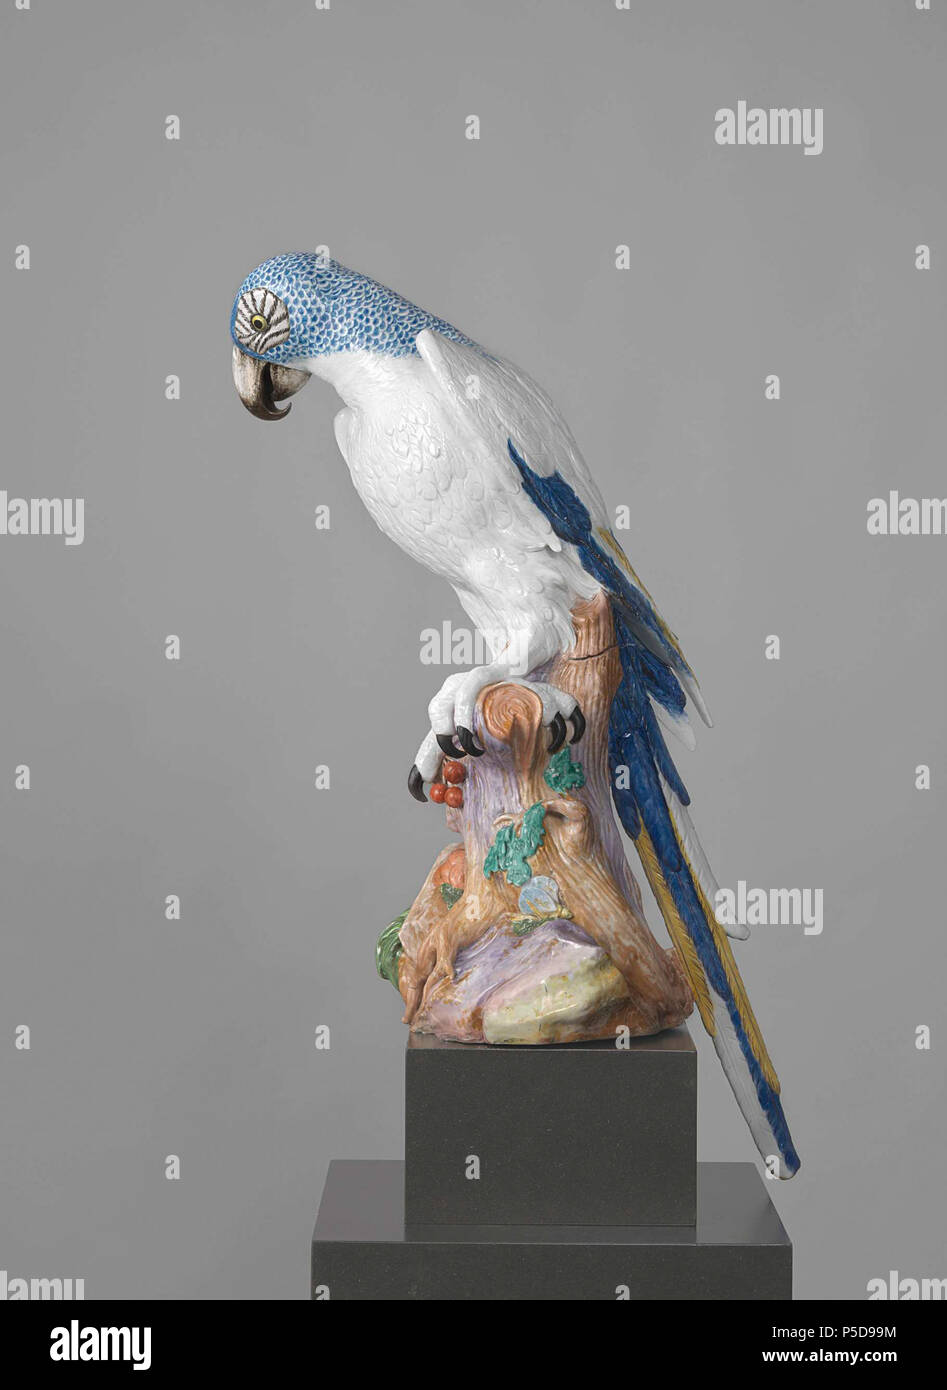 Blue Macaw . Figuur van beschilderd porselein. De stelt een papegaai (ara) voor die op een boomstronk met bladeren zit. De papegaai heeft een blauw geschubde hals en kop en een